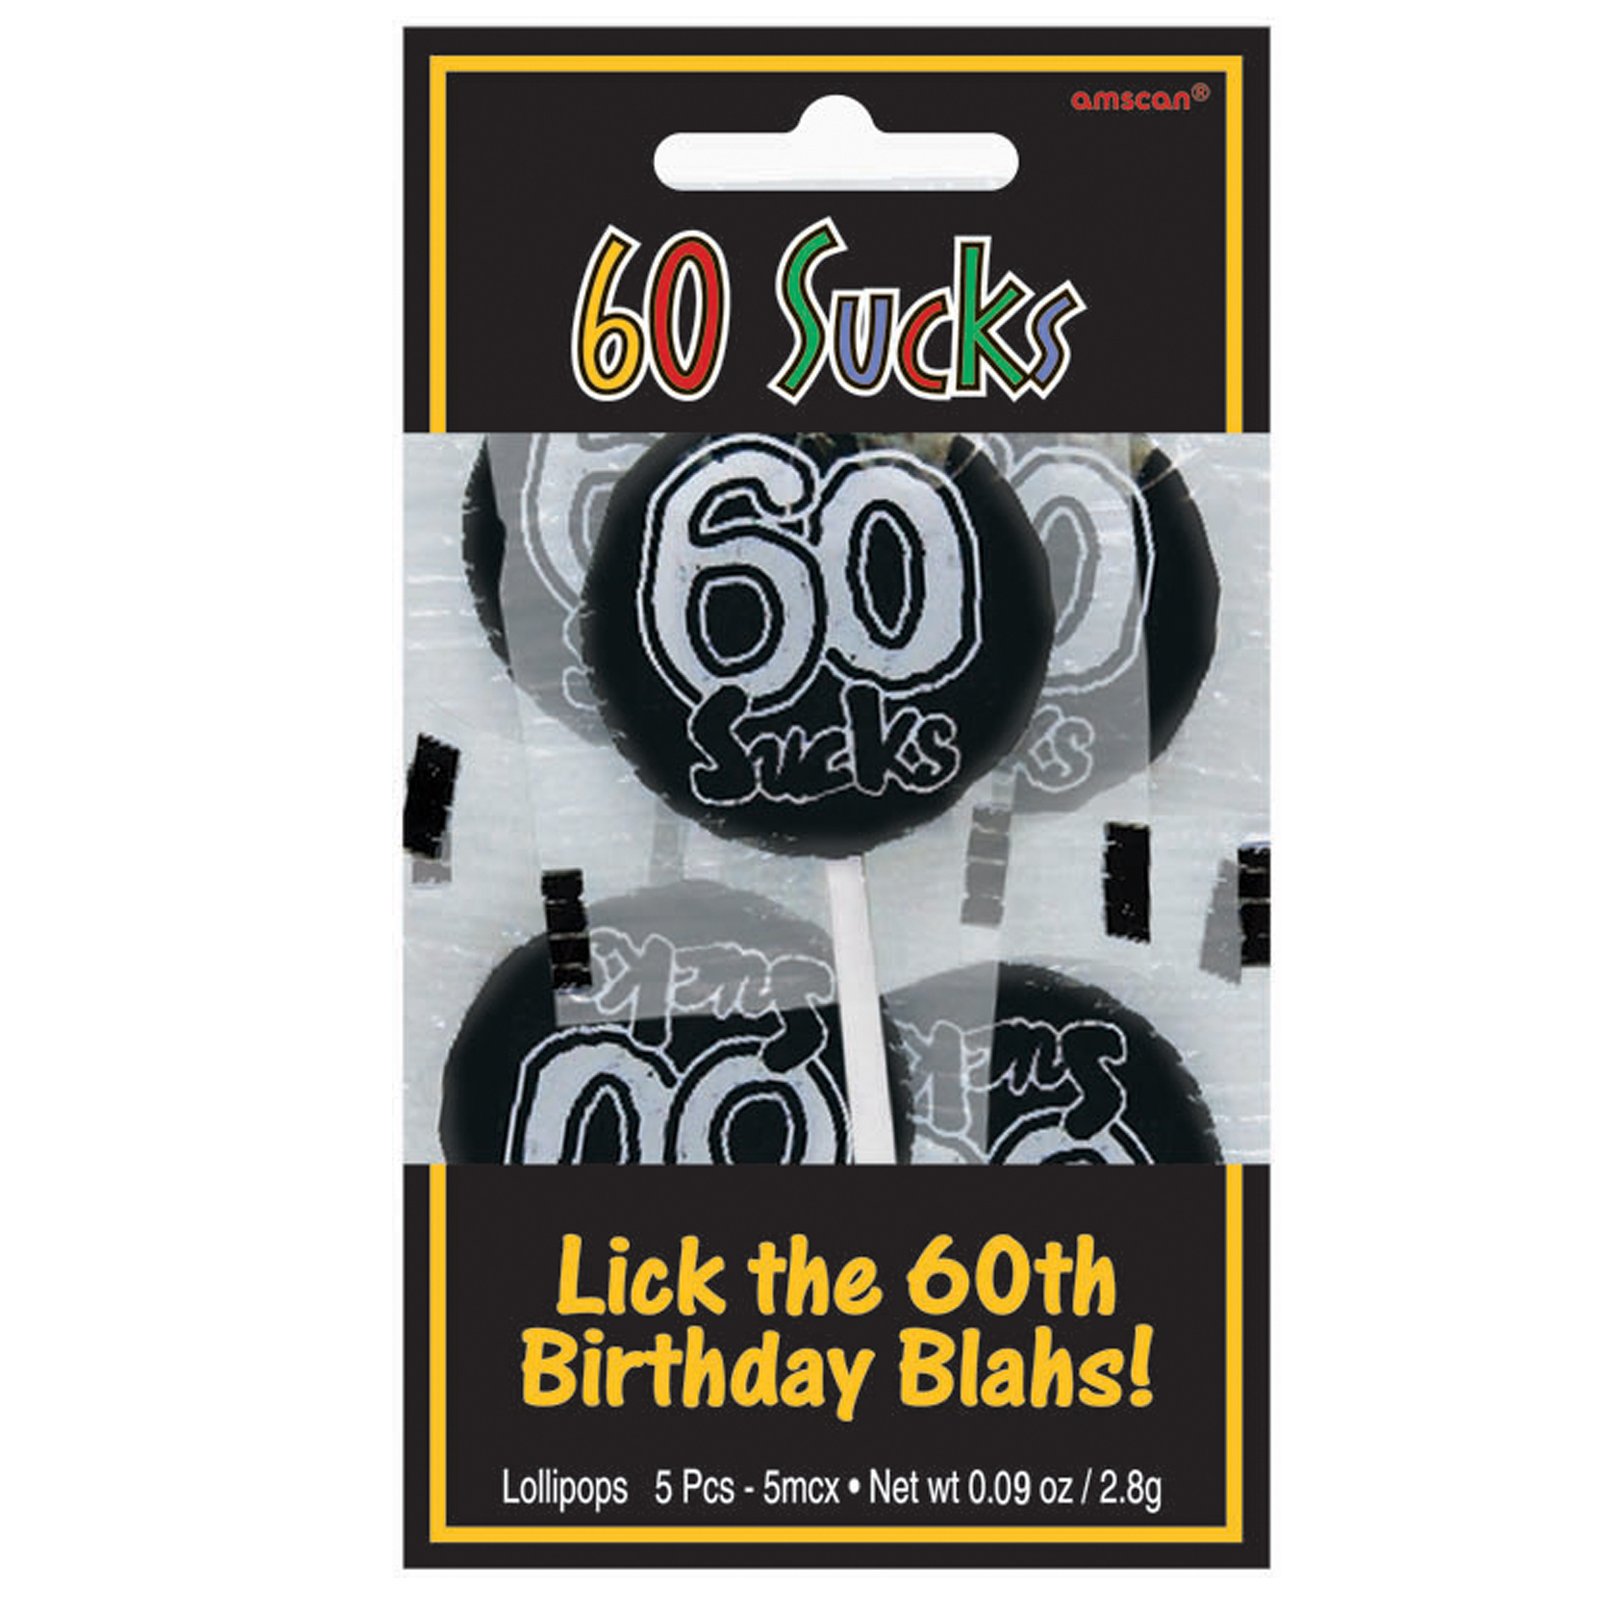 60 Sucks Lollipops (5 count)